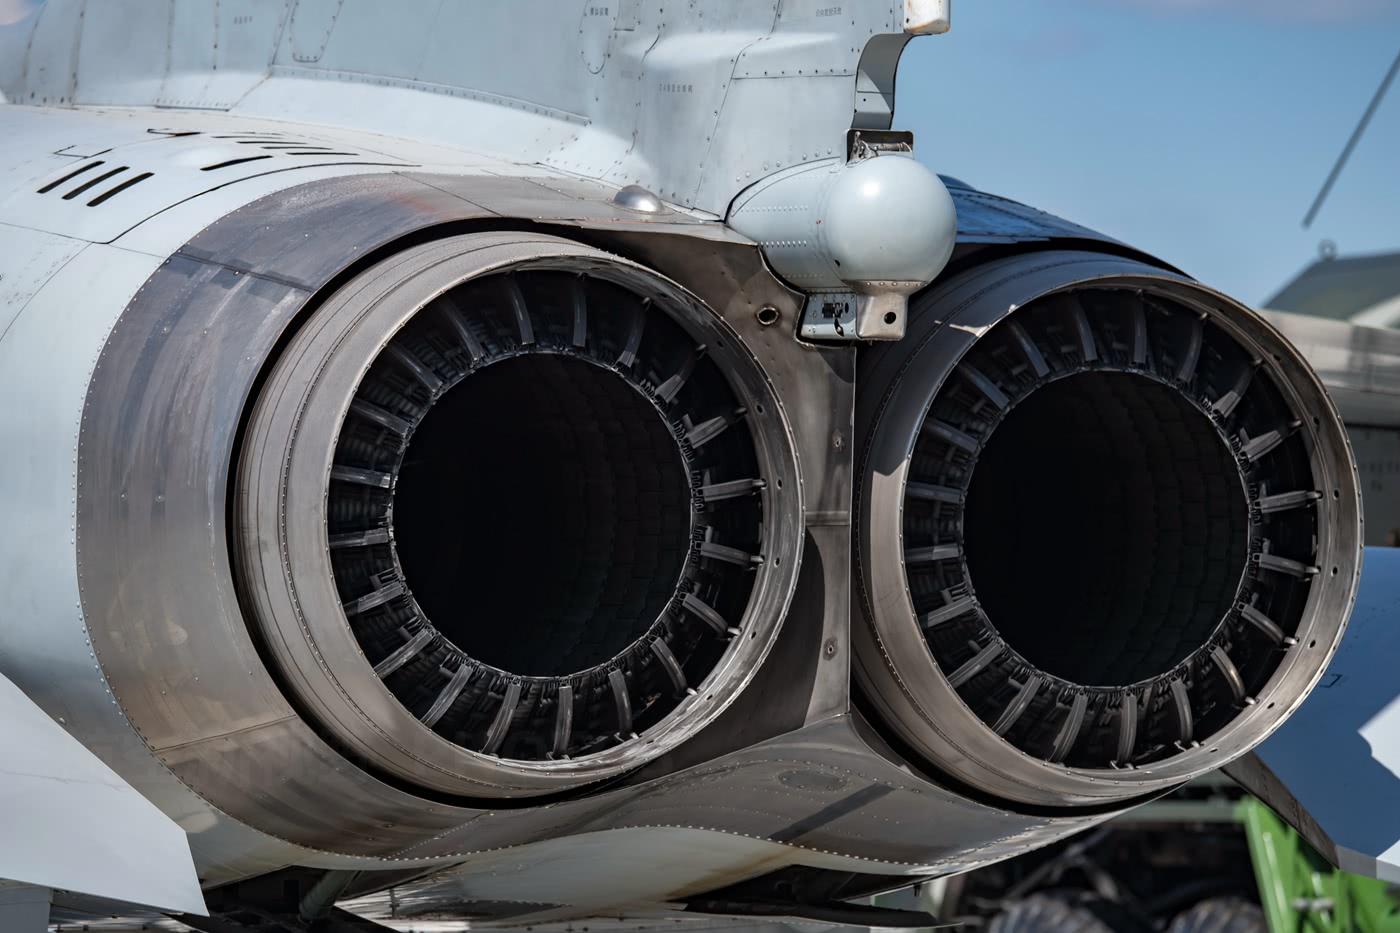 涡喷-13发动机属于第二代发动机,其基本性能最大推力为40千牛,最大